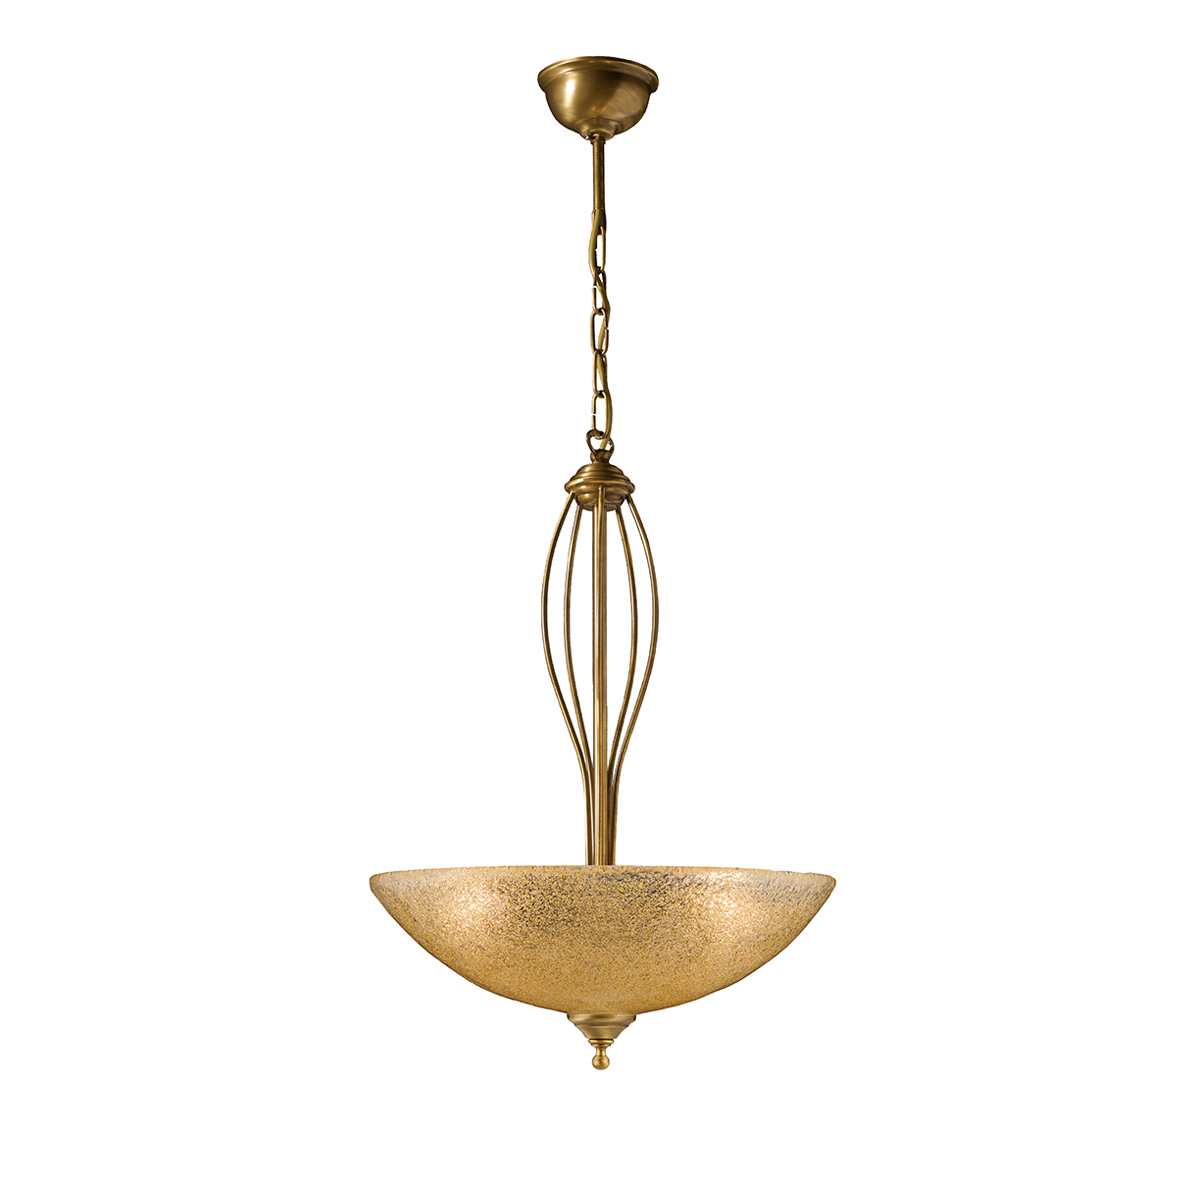 Κλασικό μονόφωτο με κρύσταλλο Murano | ΝΥΜΦΑΙΟ. Classic suspension lamp with Murano crystal | NYMPHEO